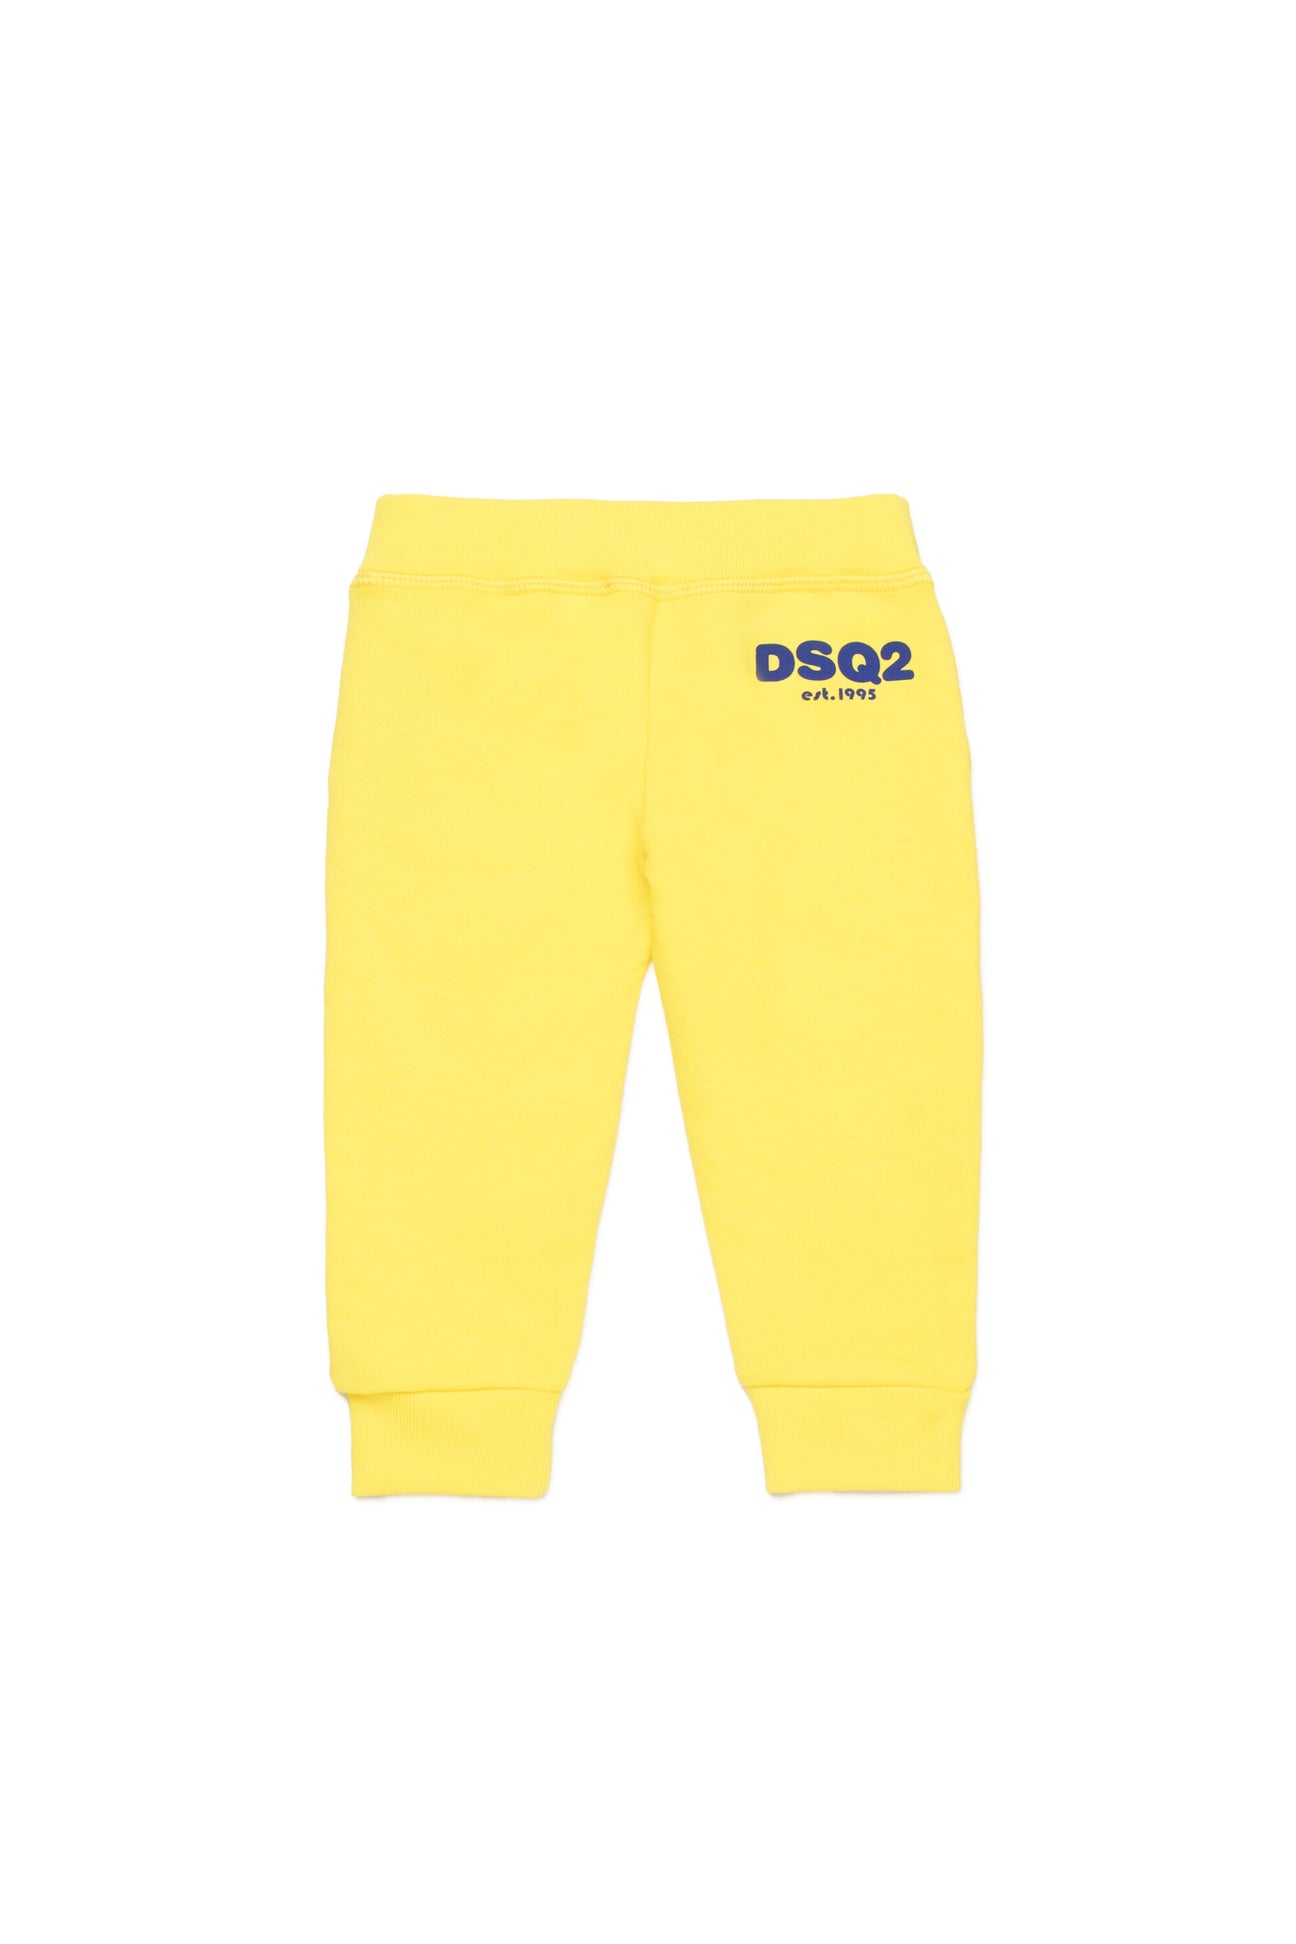 Pantalones deportivos en chándal con logotipo DSQ2 est.1995 Pantalones deportivos en chándal con logotipo DSQ2 est.1995